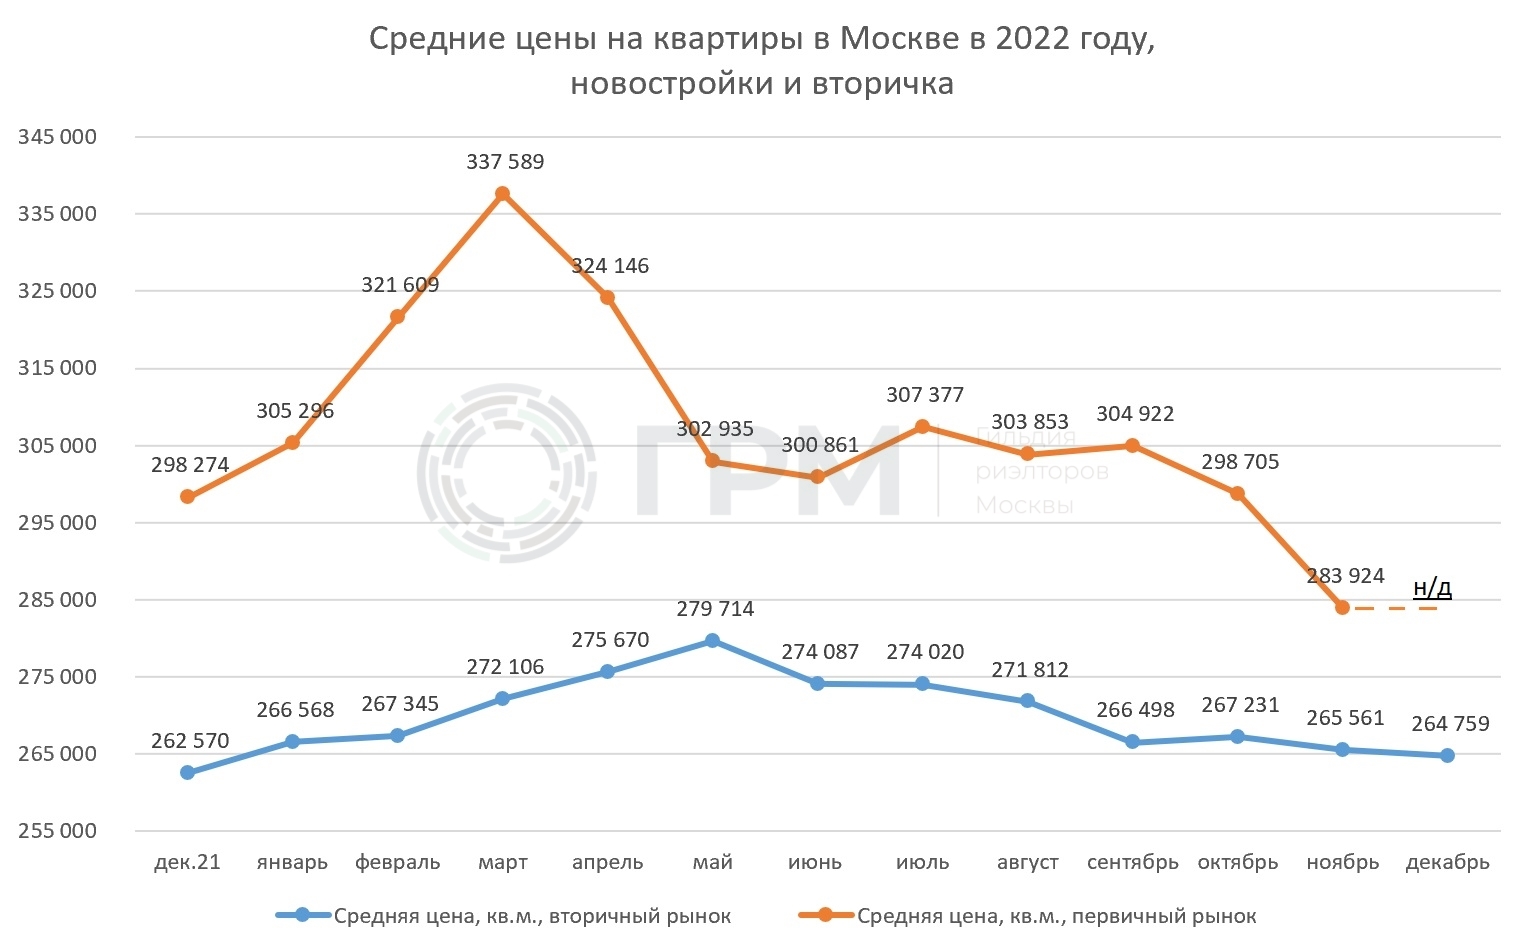 Сравнительный график средних цен на квартиры в Москве на первичном и вторичном рынке в 2022 году